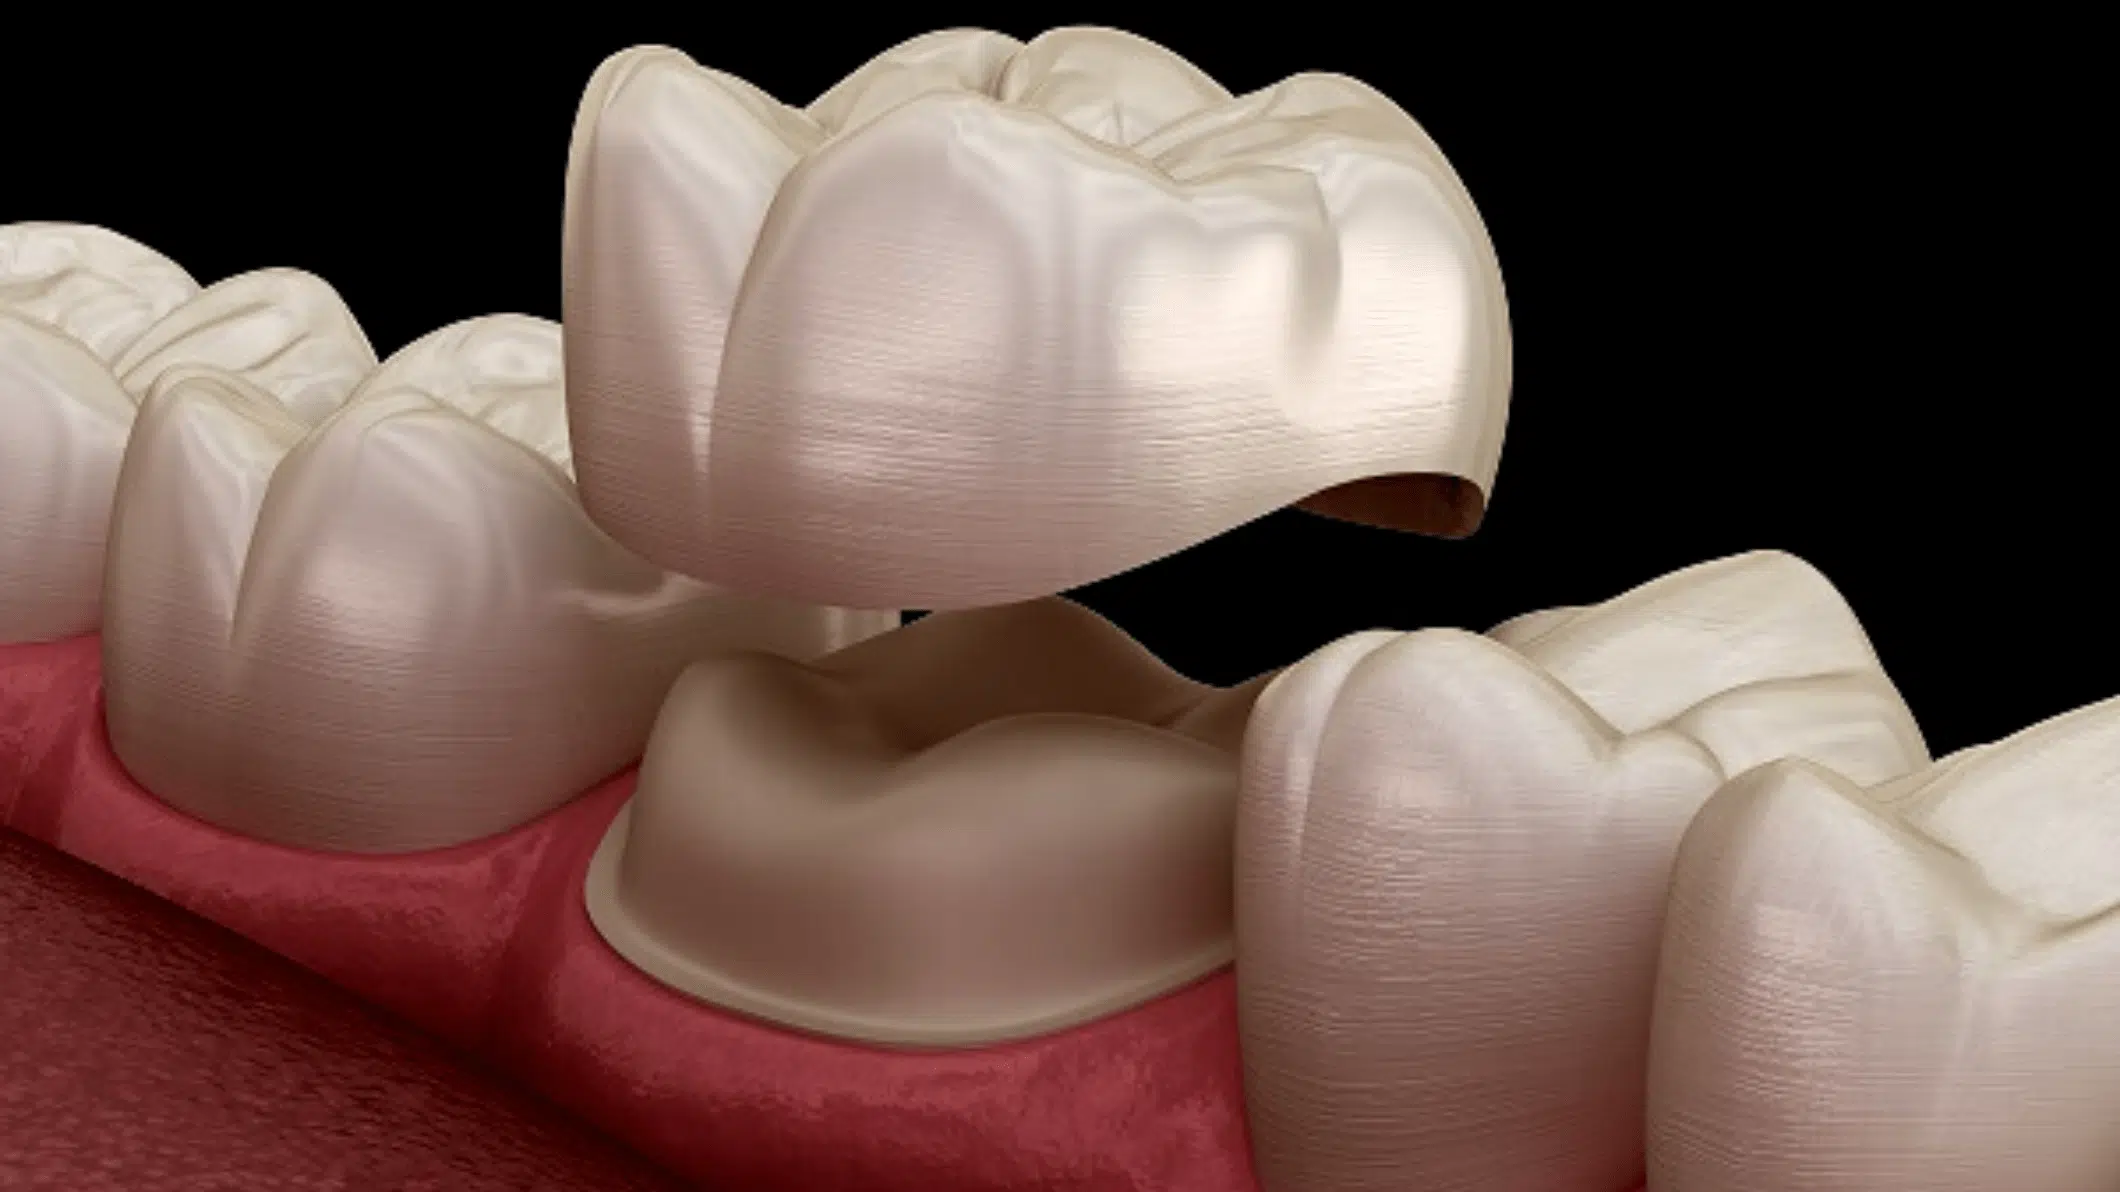 Dental Crowns Garland